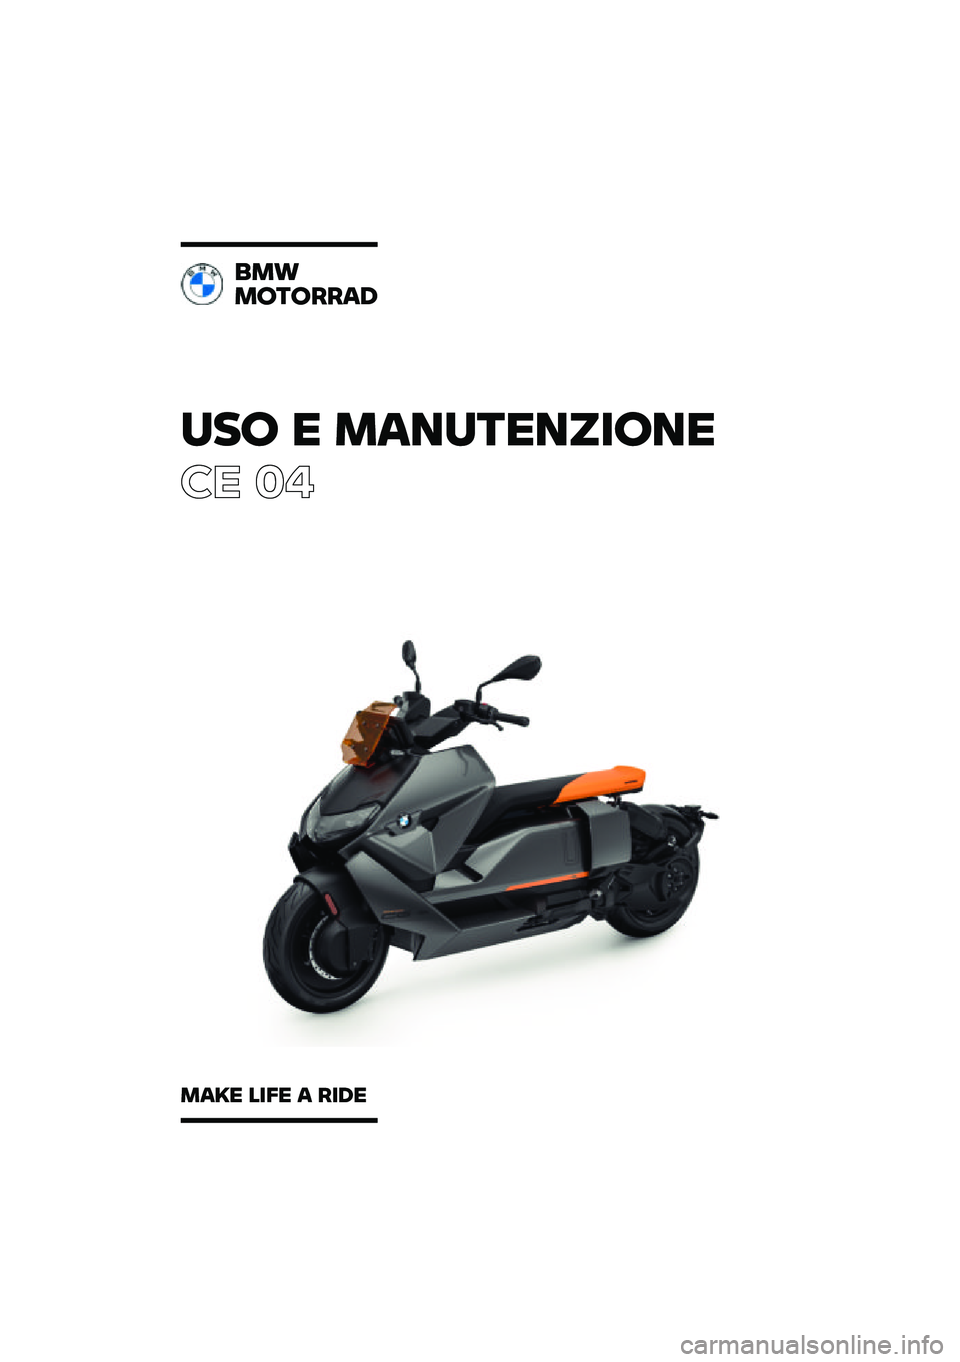 BMW MOTORRAD CE 04 2021  Libretto di uso e manutenzione (in Italian) ��� � ���\b��	��\b�
���\b�
�� ��
�\f��
���	�����
���� ���� � ���� 